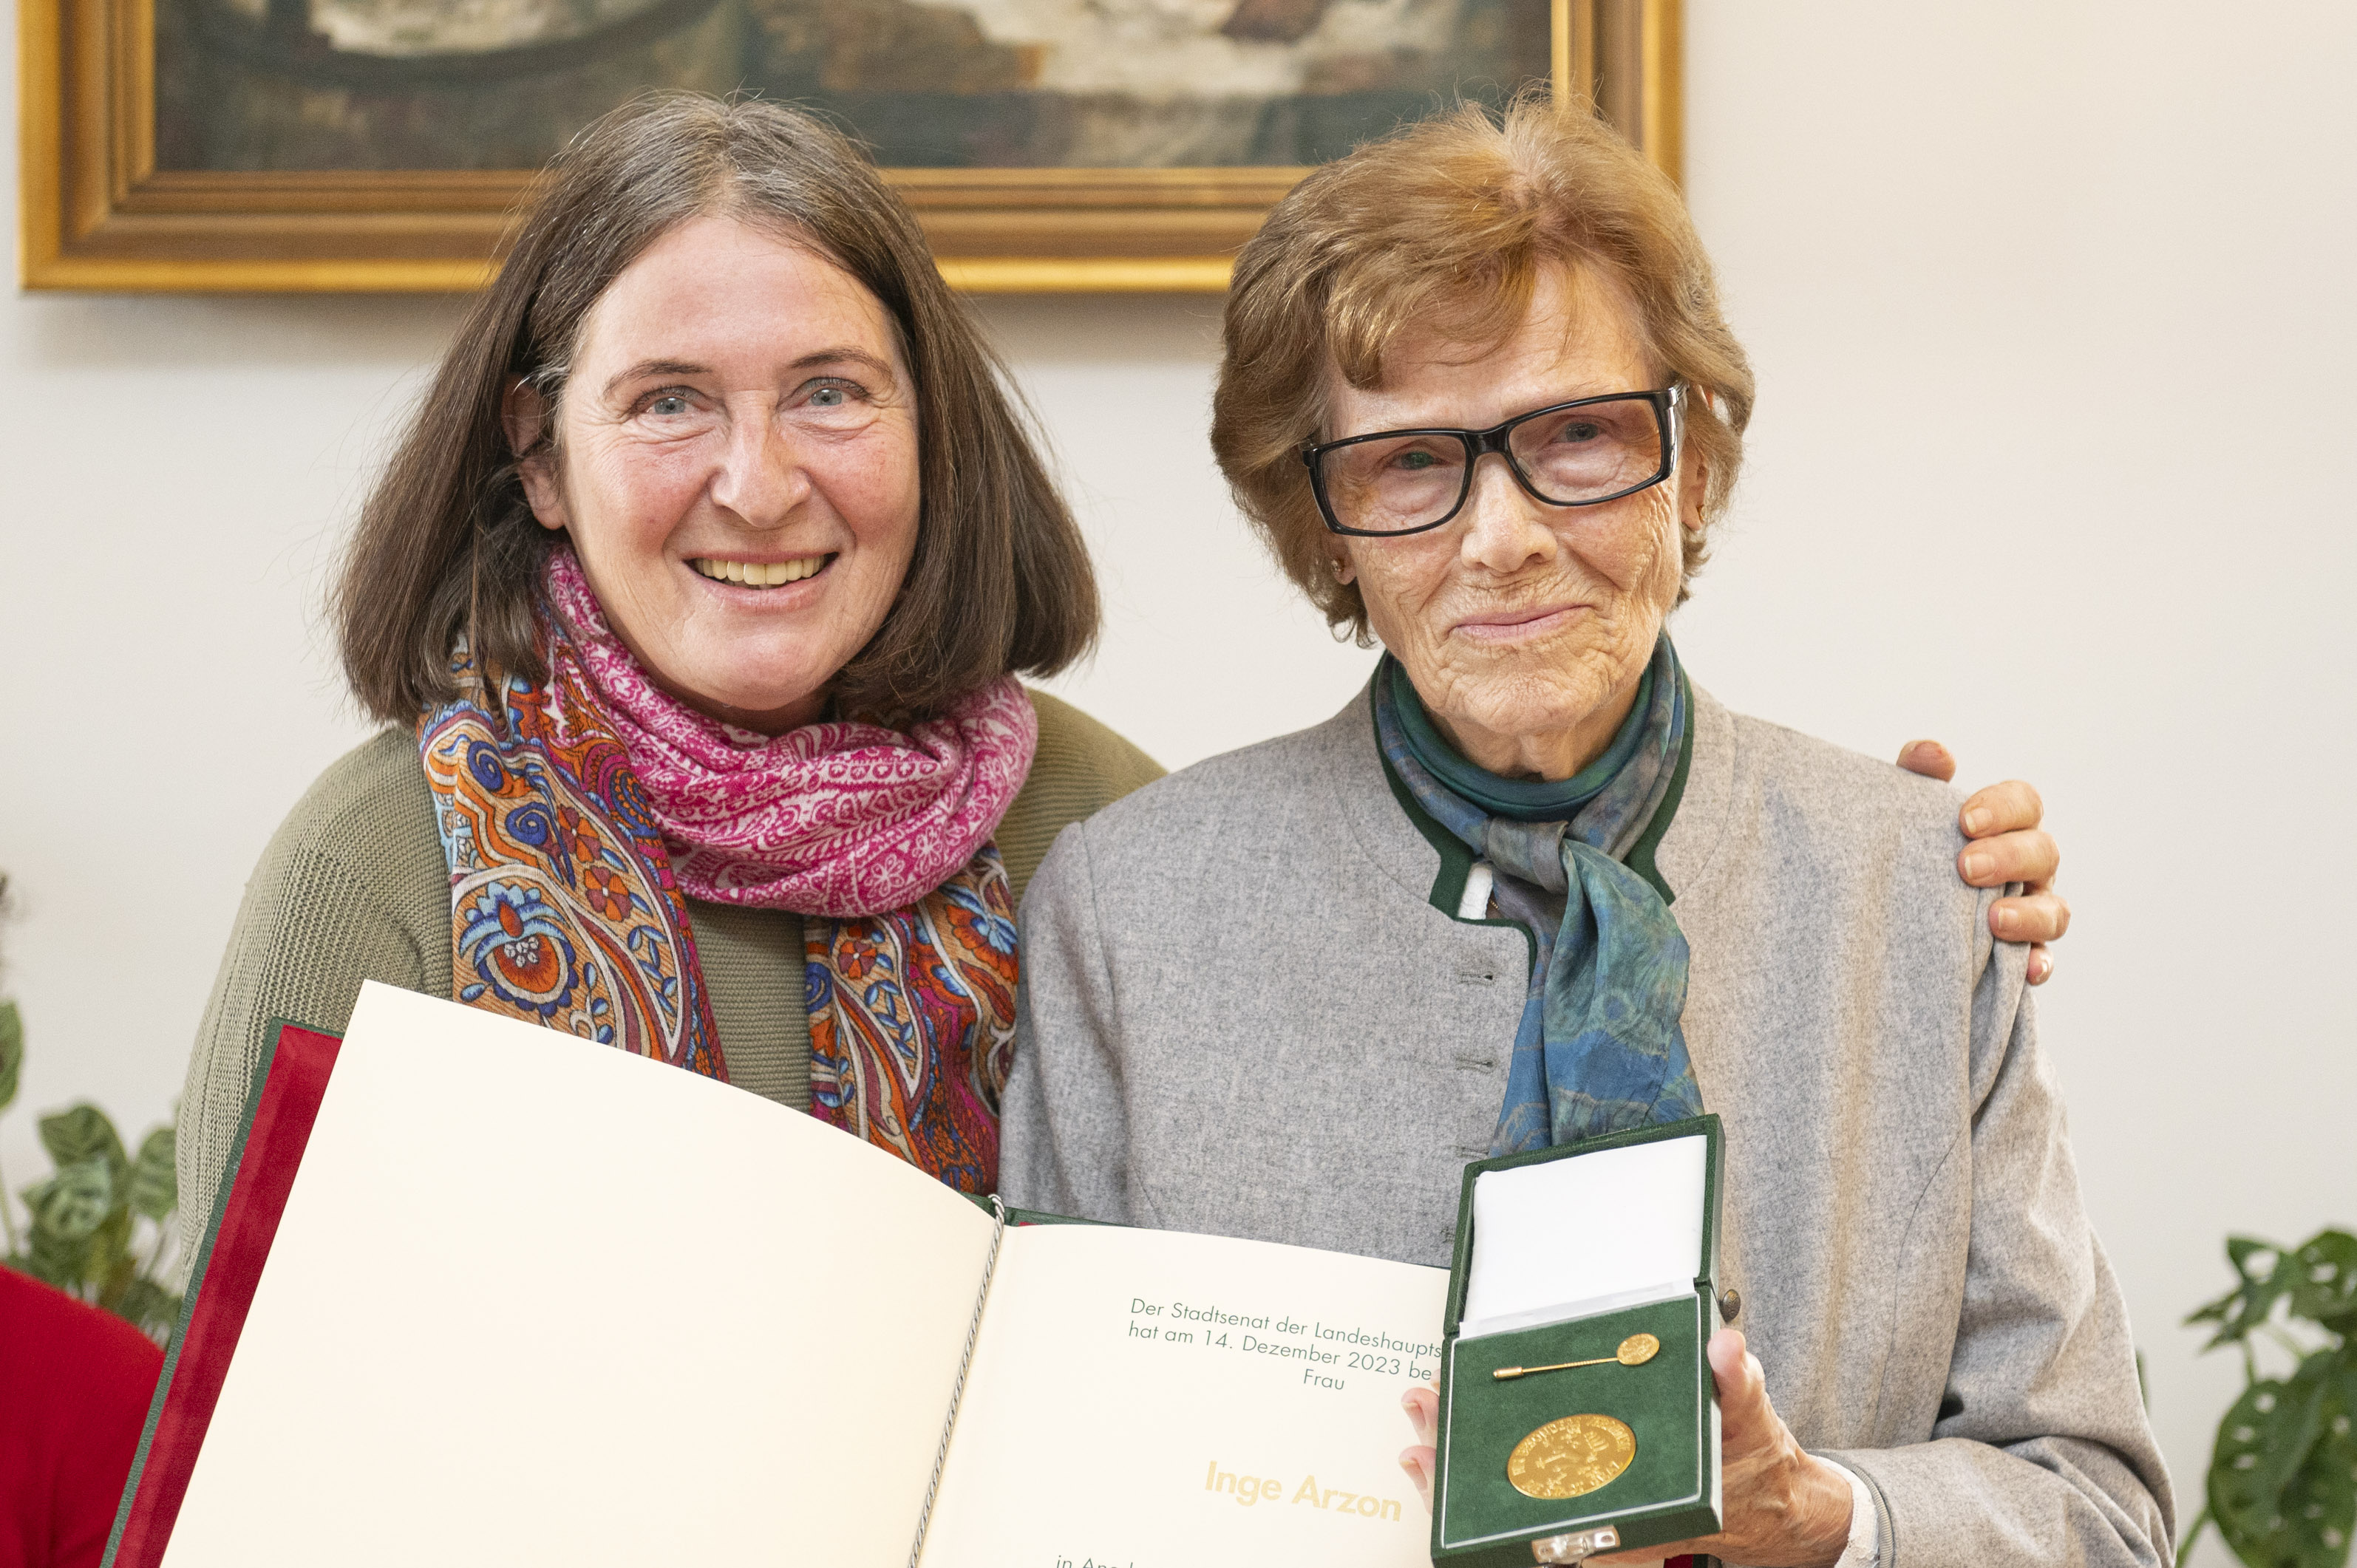 Inge Arzon mit dem Goldenen Ehrenzeichen der Stadt Graz sowie der dazugehörigen Urkunde.